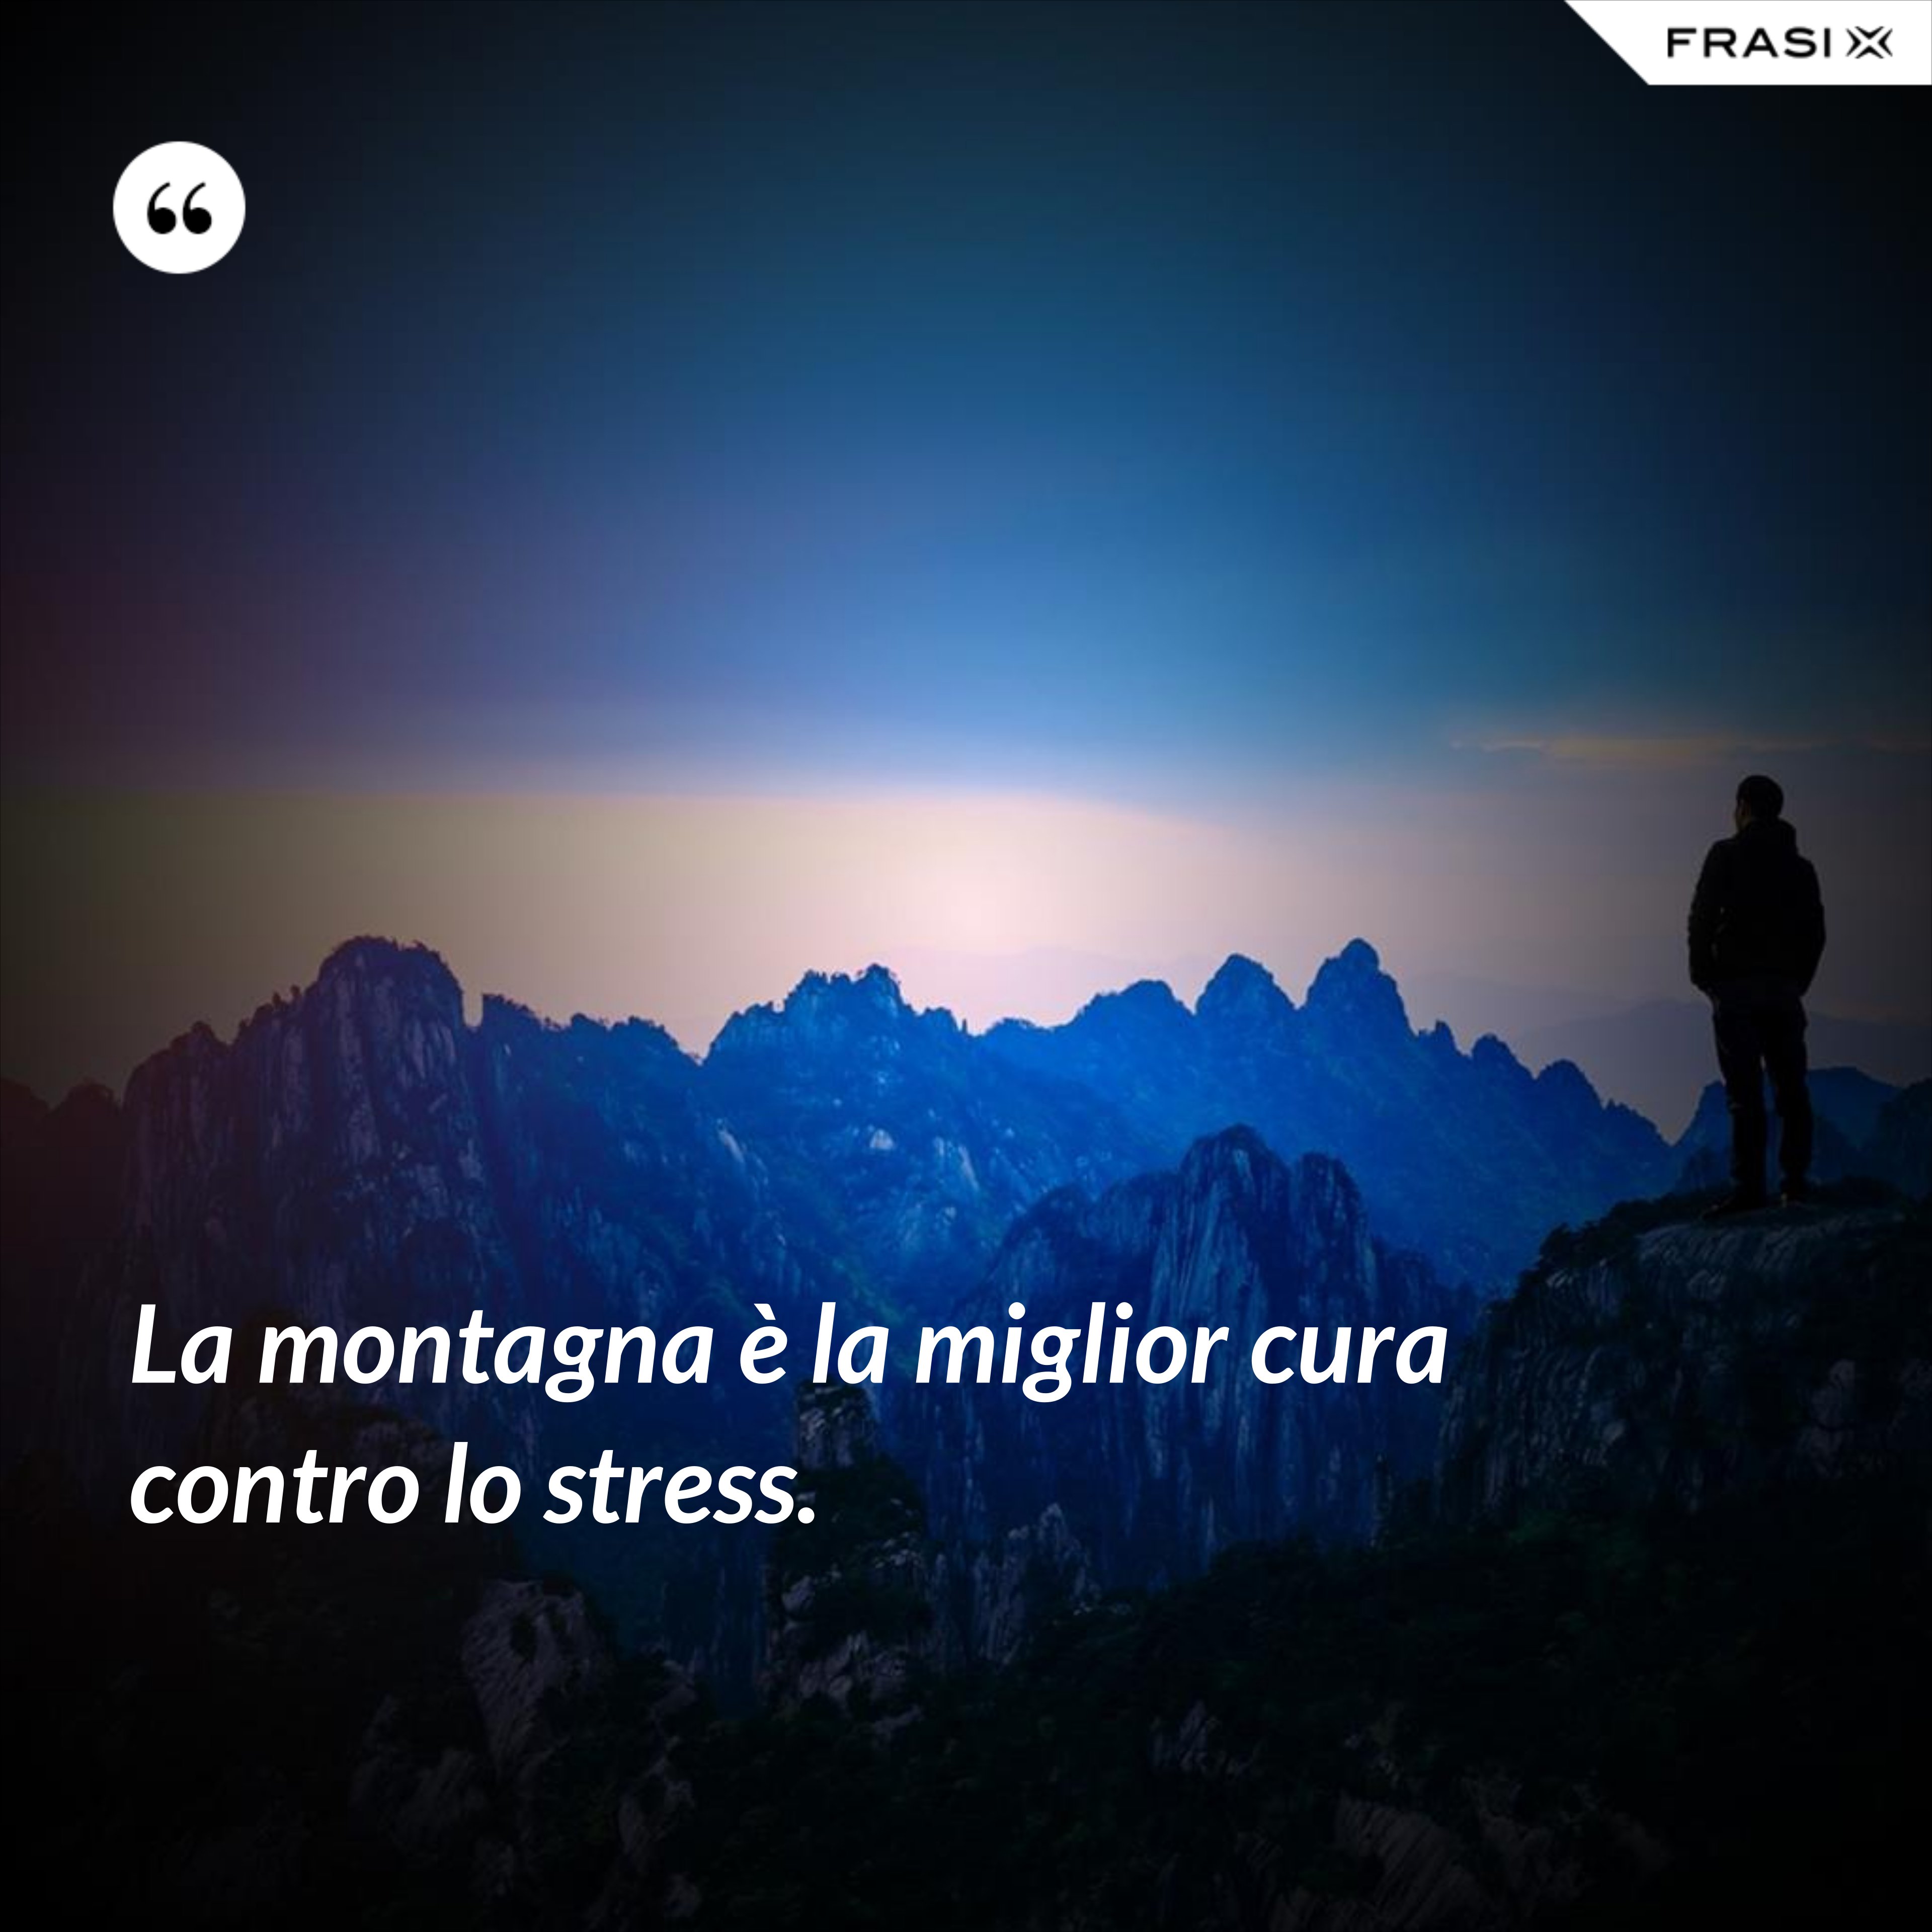 La montagna è la miglior cura contro lo stress. - Anonimo